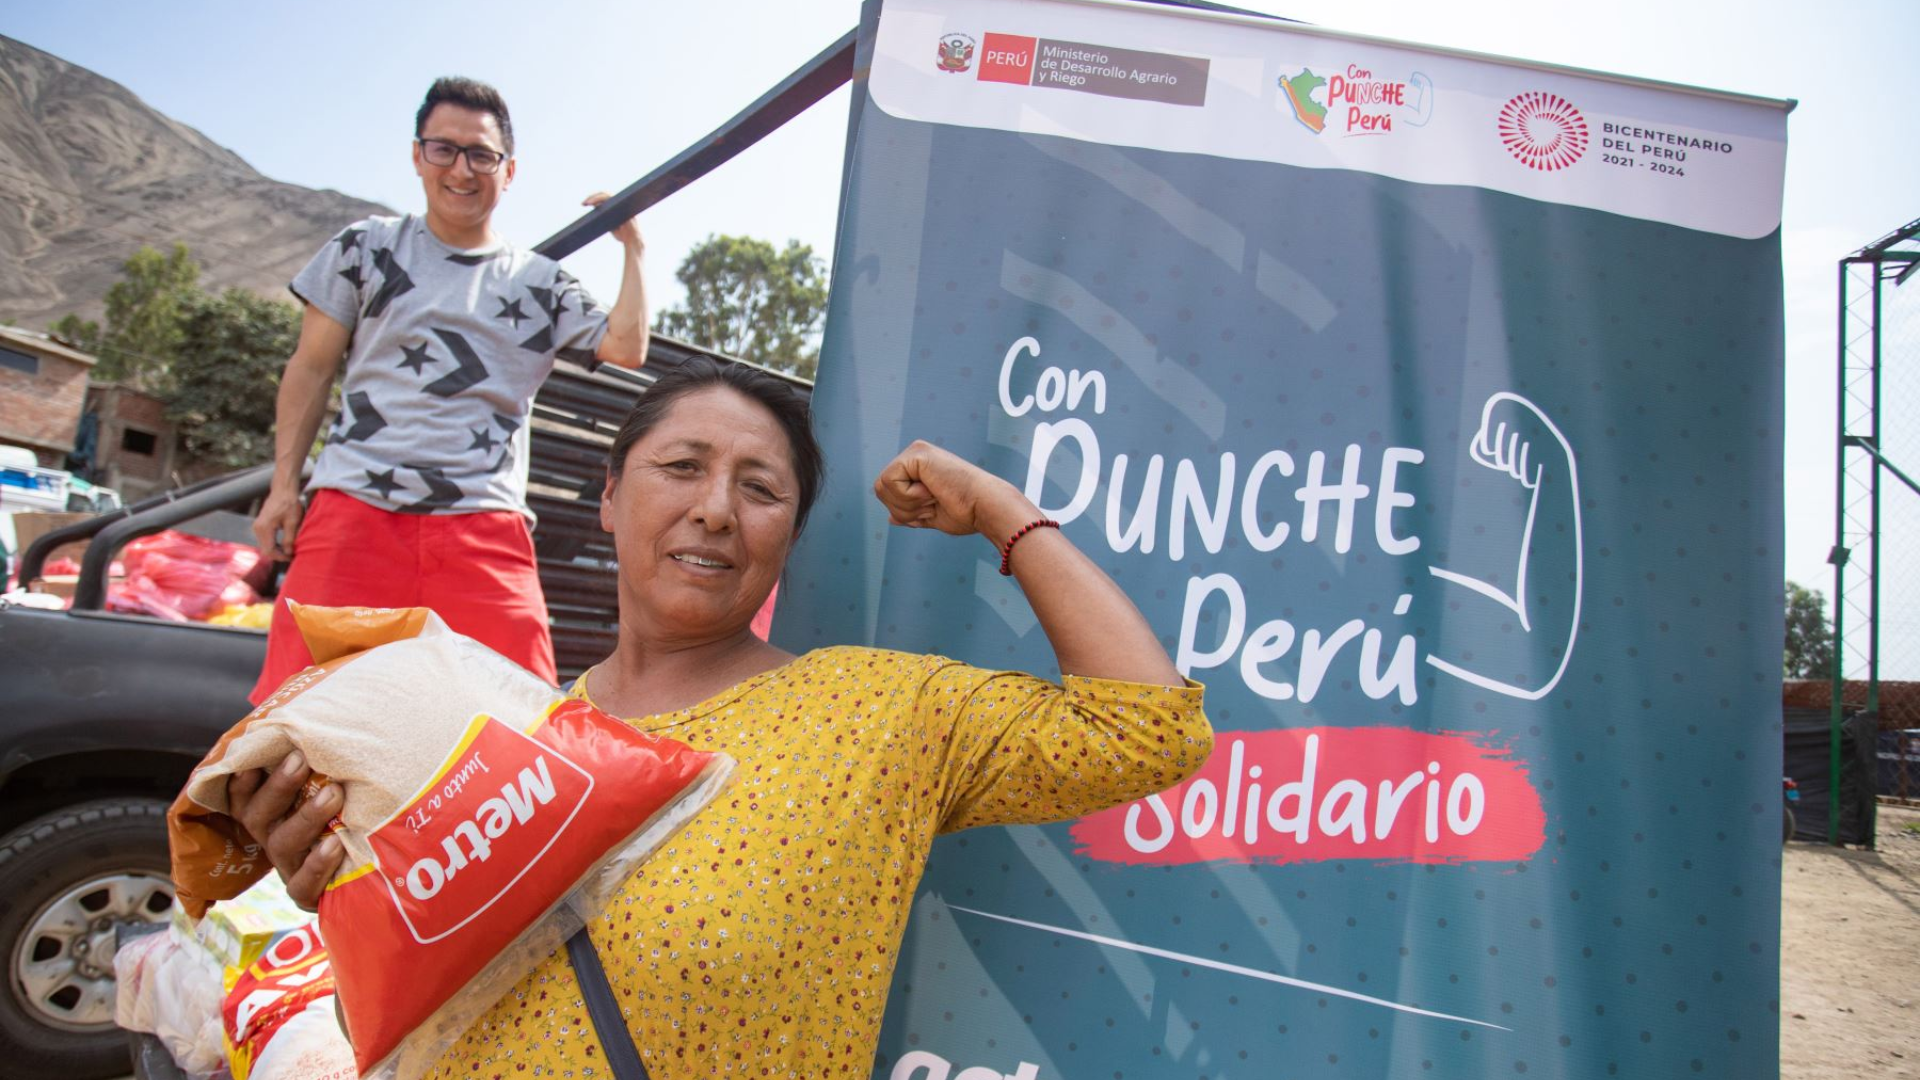 Cruzada "Con Punche Perú Solidario".